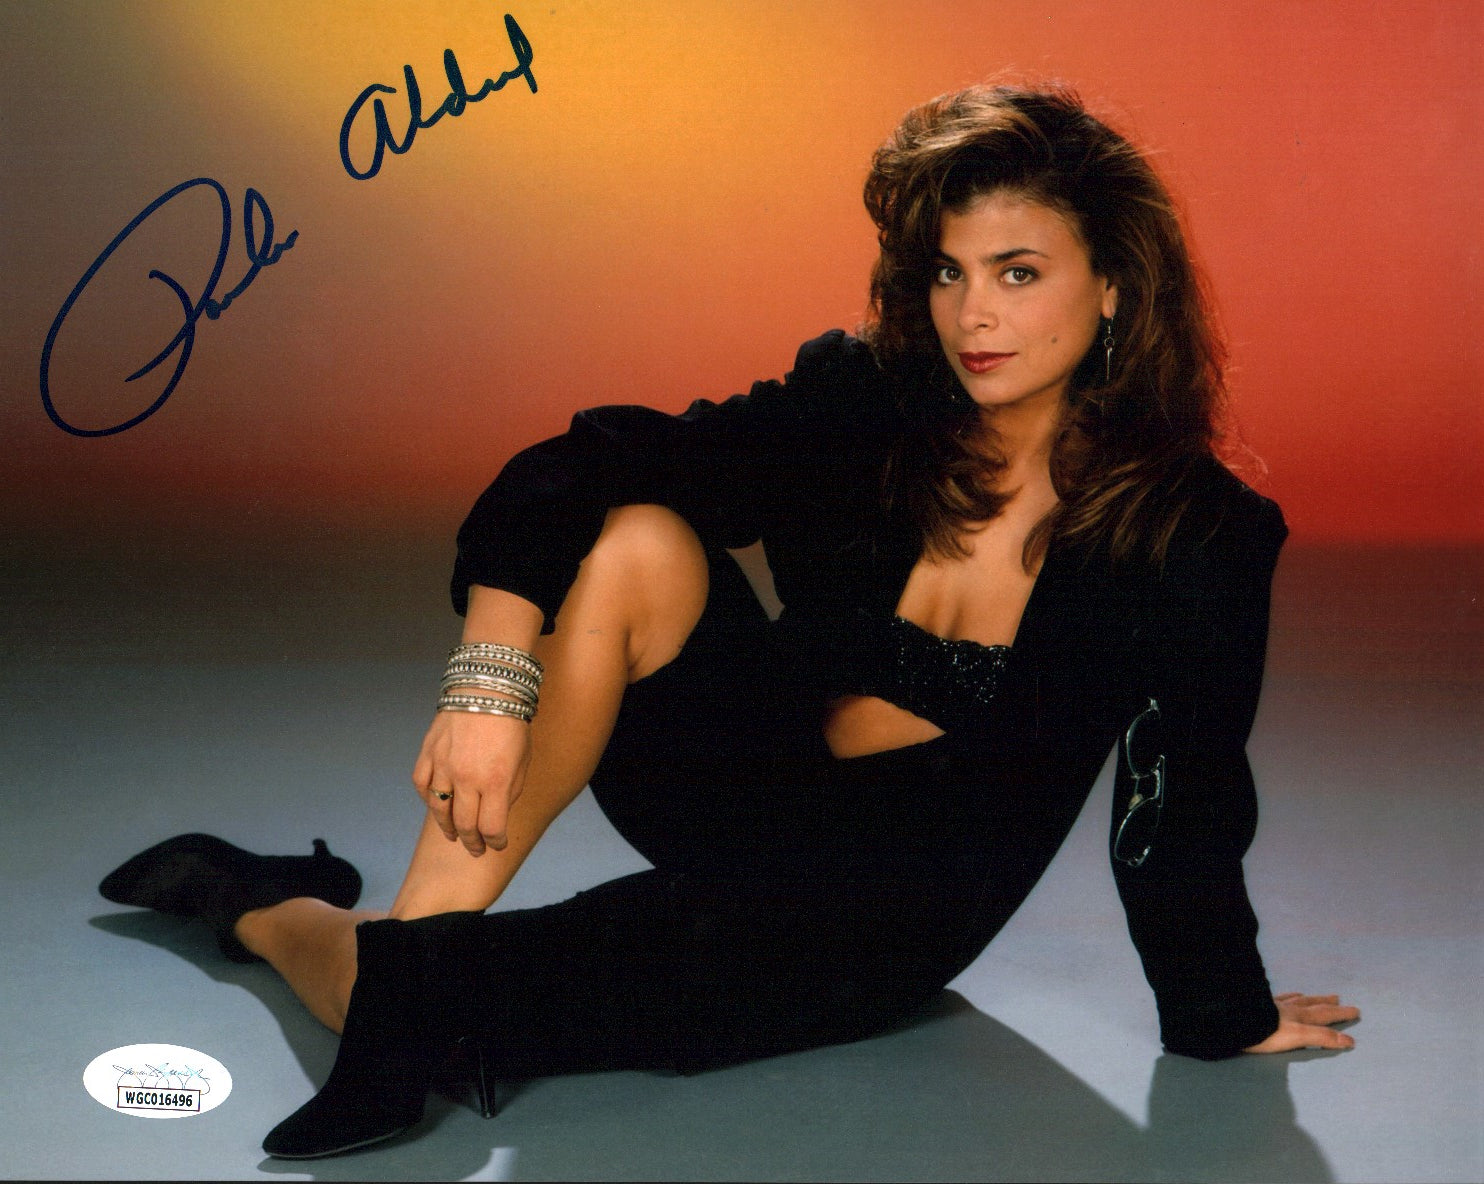 Paula Abdul 8x10 Signed Photo JSA Certified Autograph